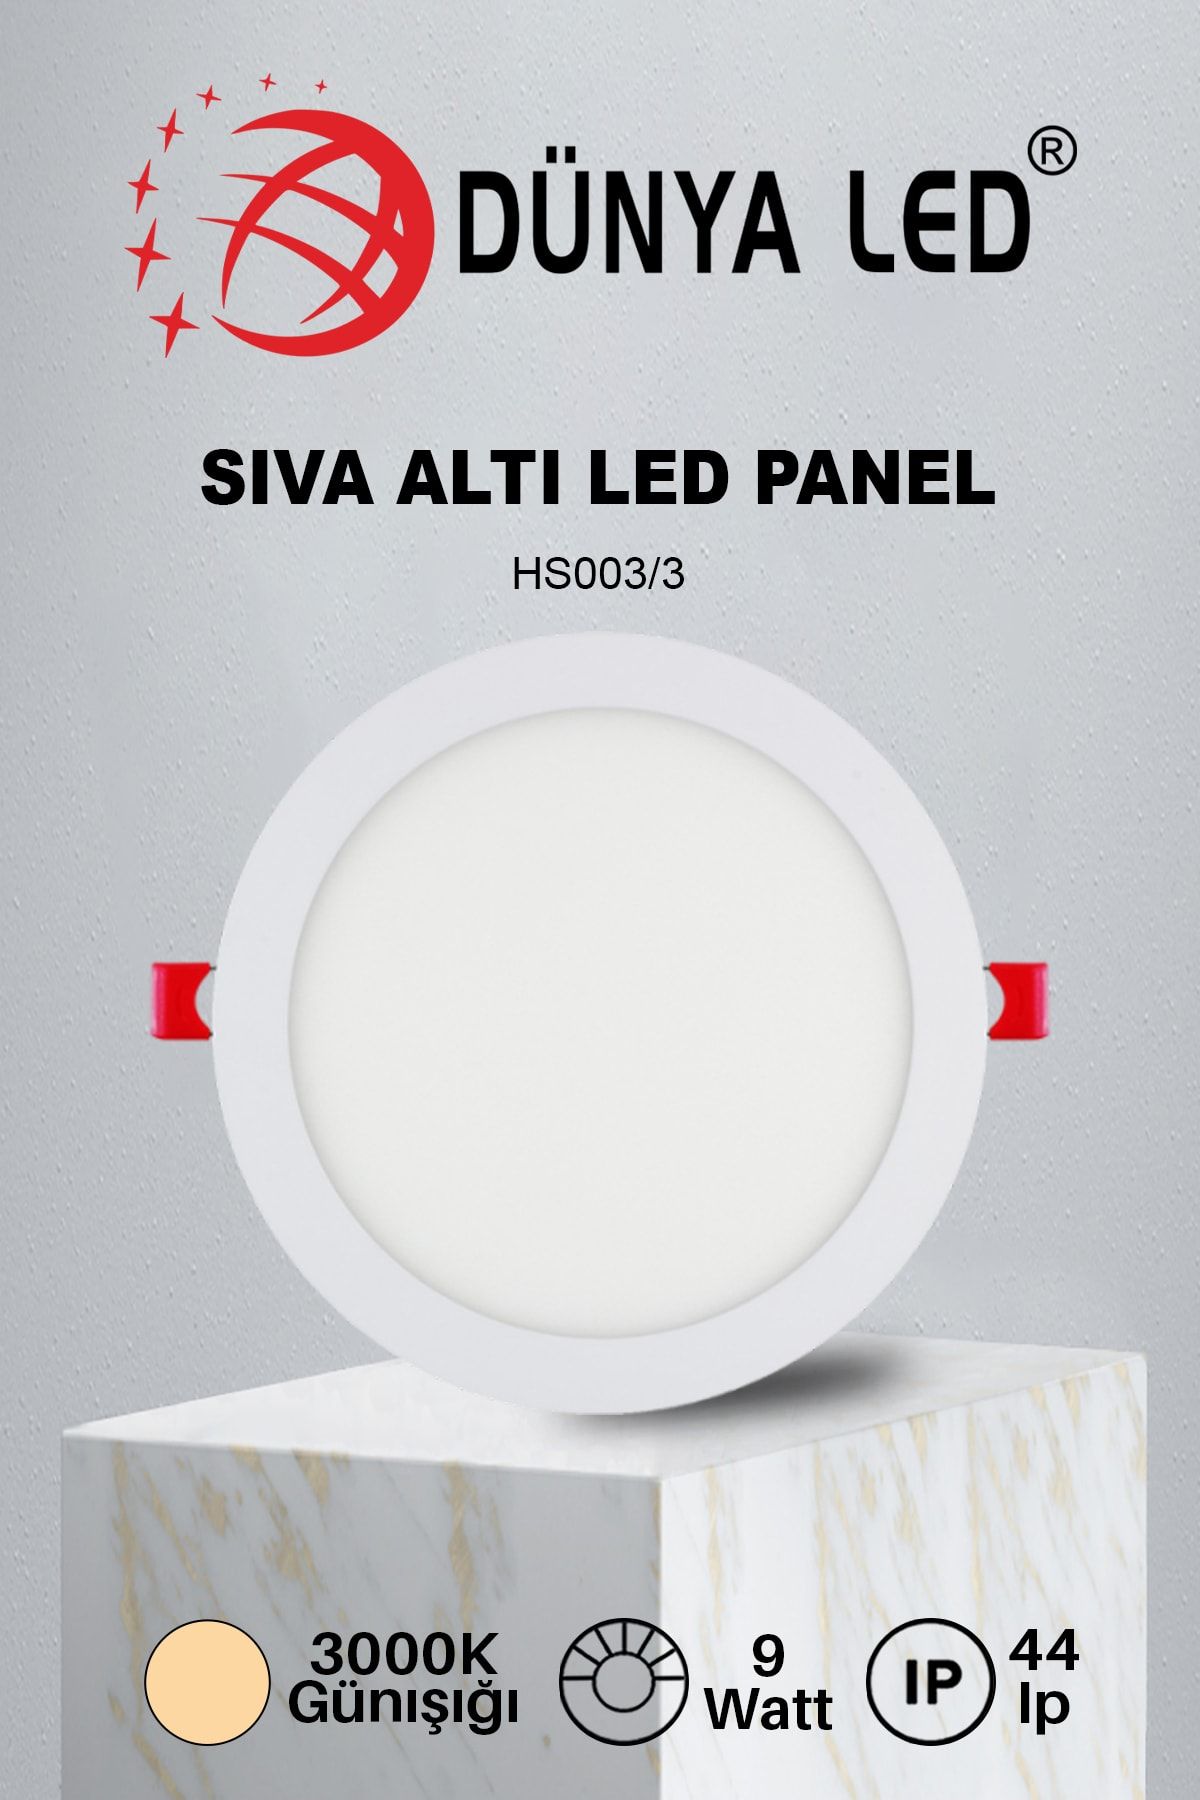 DÜNYA LED Hs.003/3 9w Sıva Altı Yuvarlak Spot Led Panel 3000k Günışığı Drıver Hediye